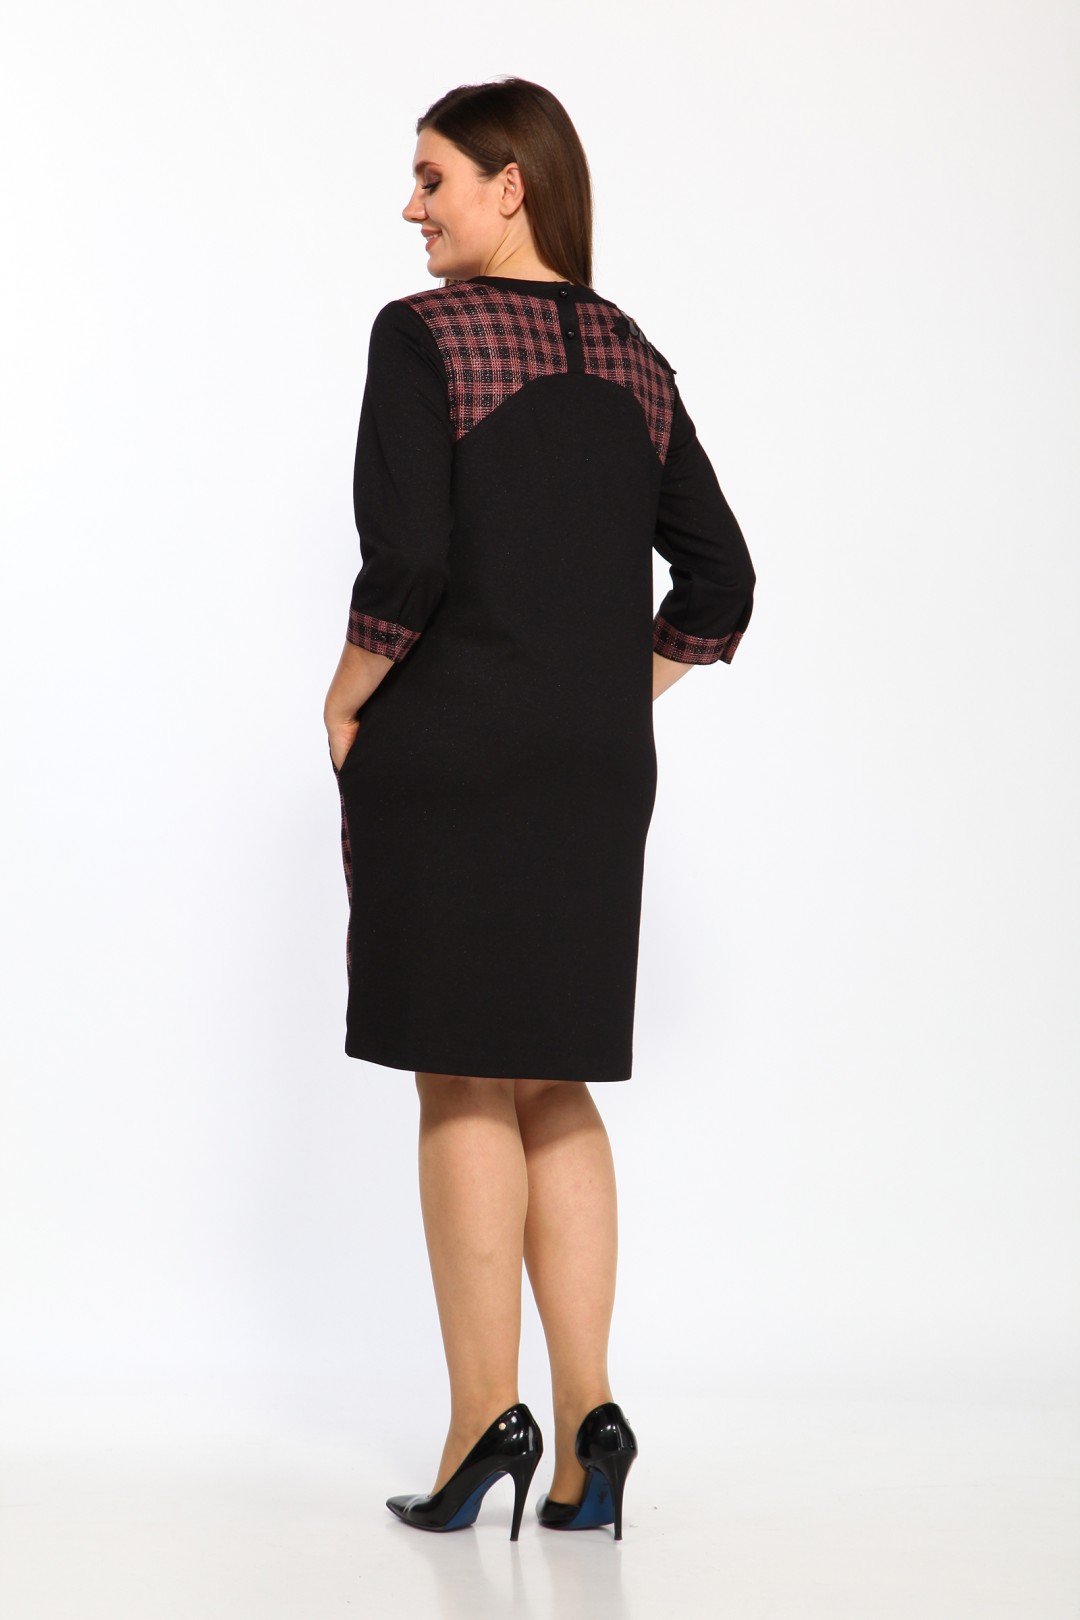 Платье LadyStyleClassic 1488/1 черный с малиновым